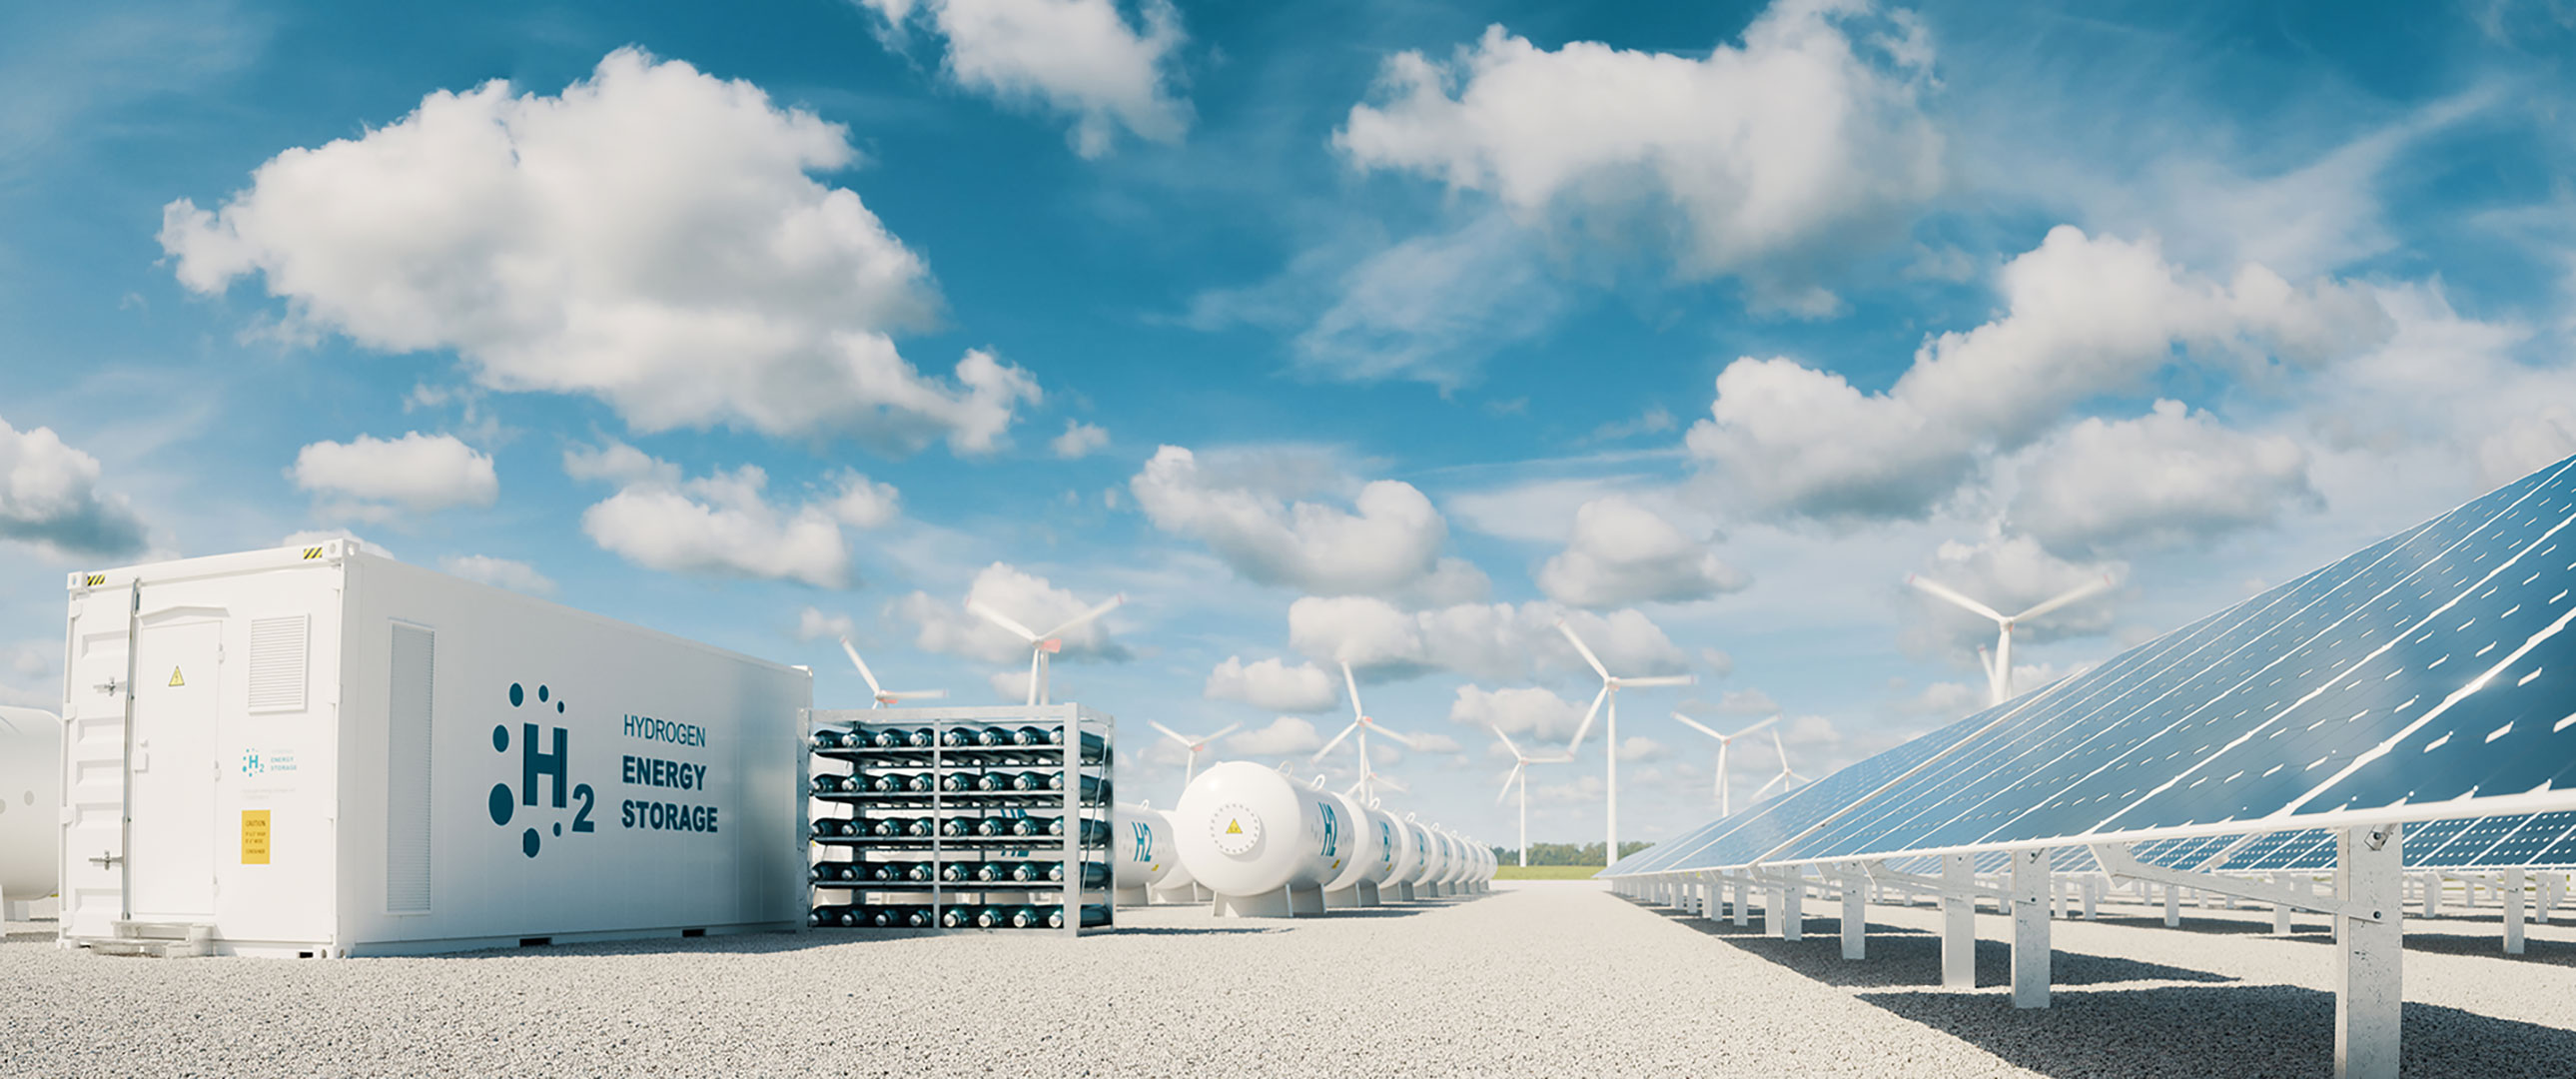 Elektrolyseur in einem 20 Fuß Container, Wasserstoffspeicher und regenerative Erzeugungsanlagen